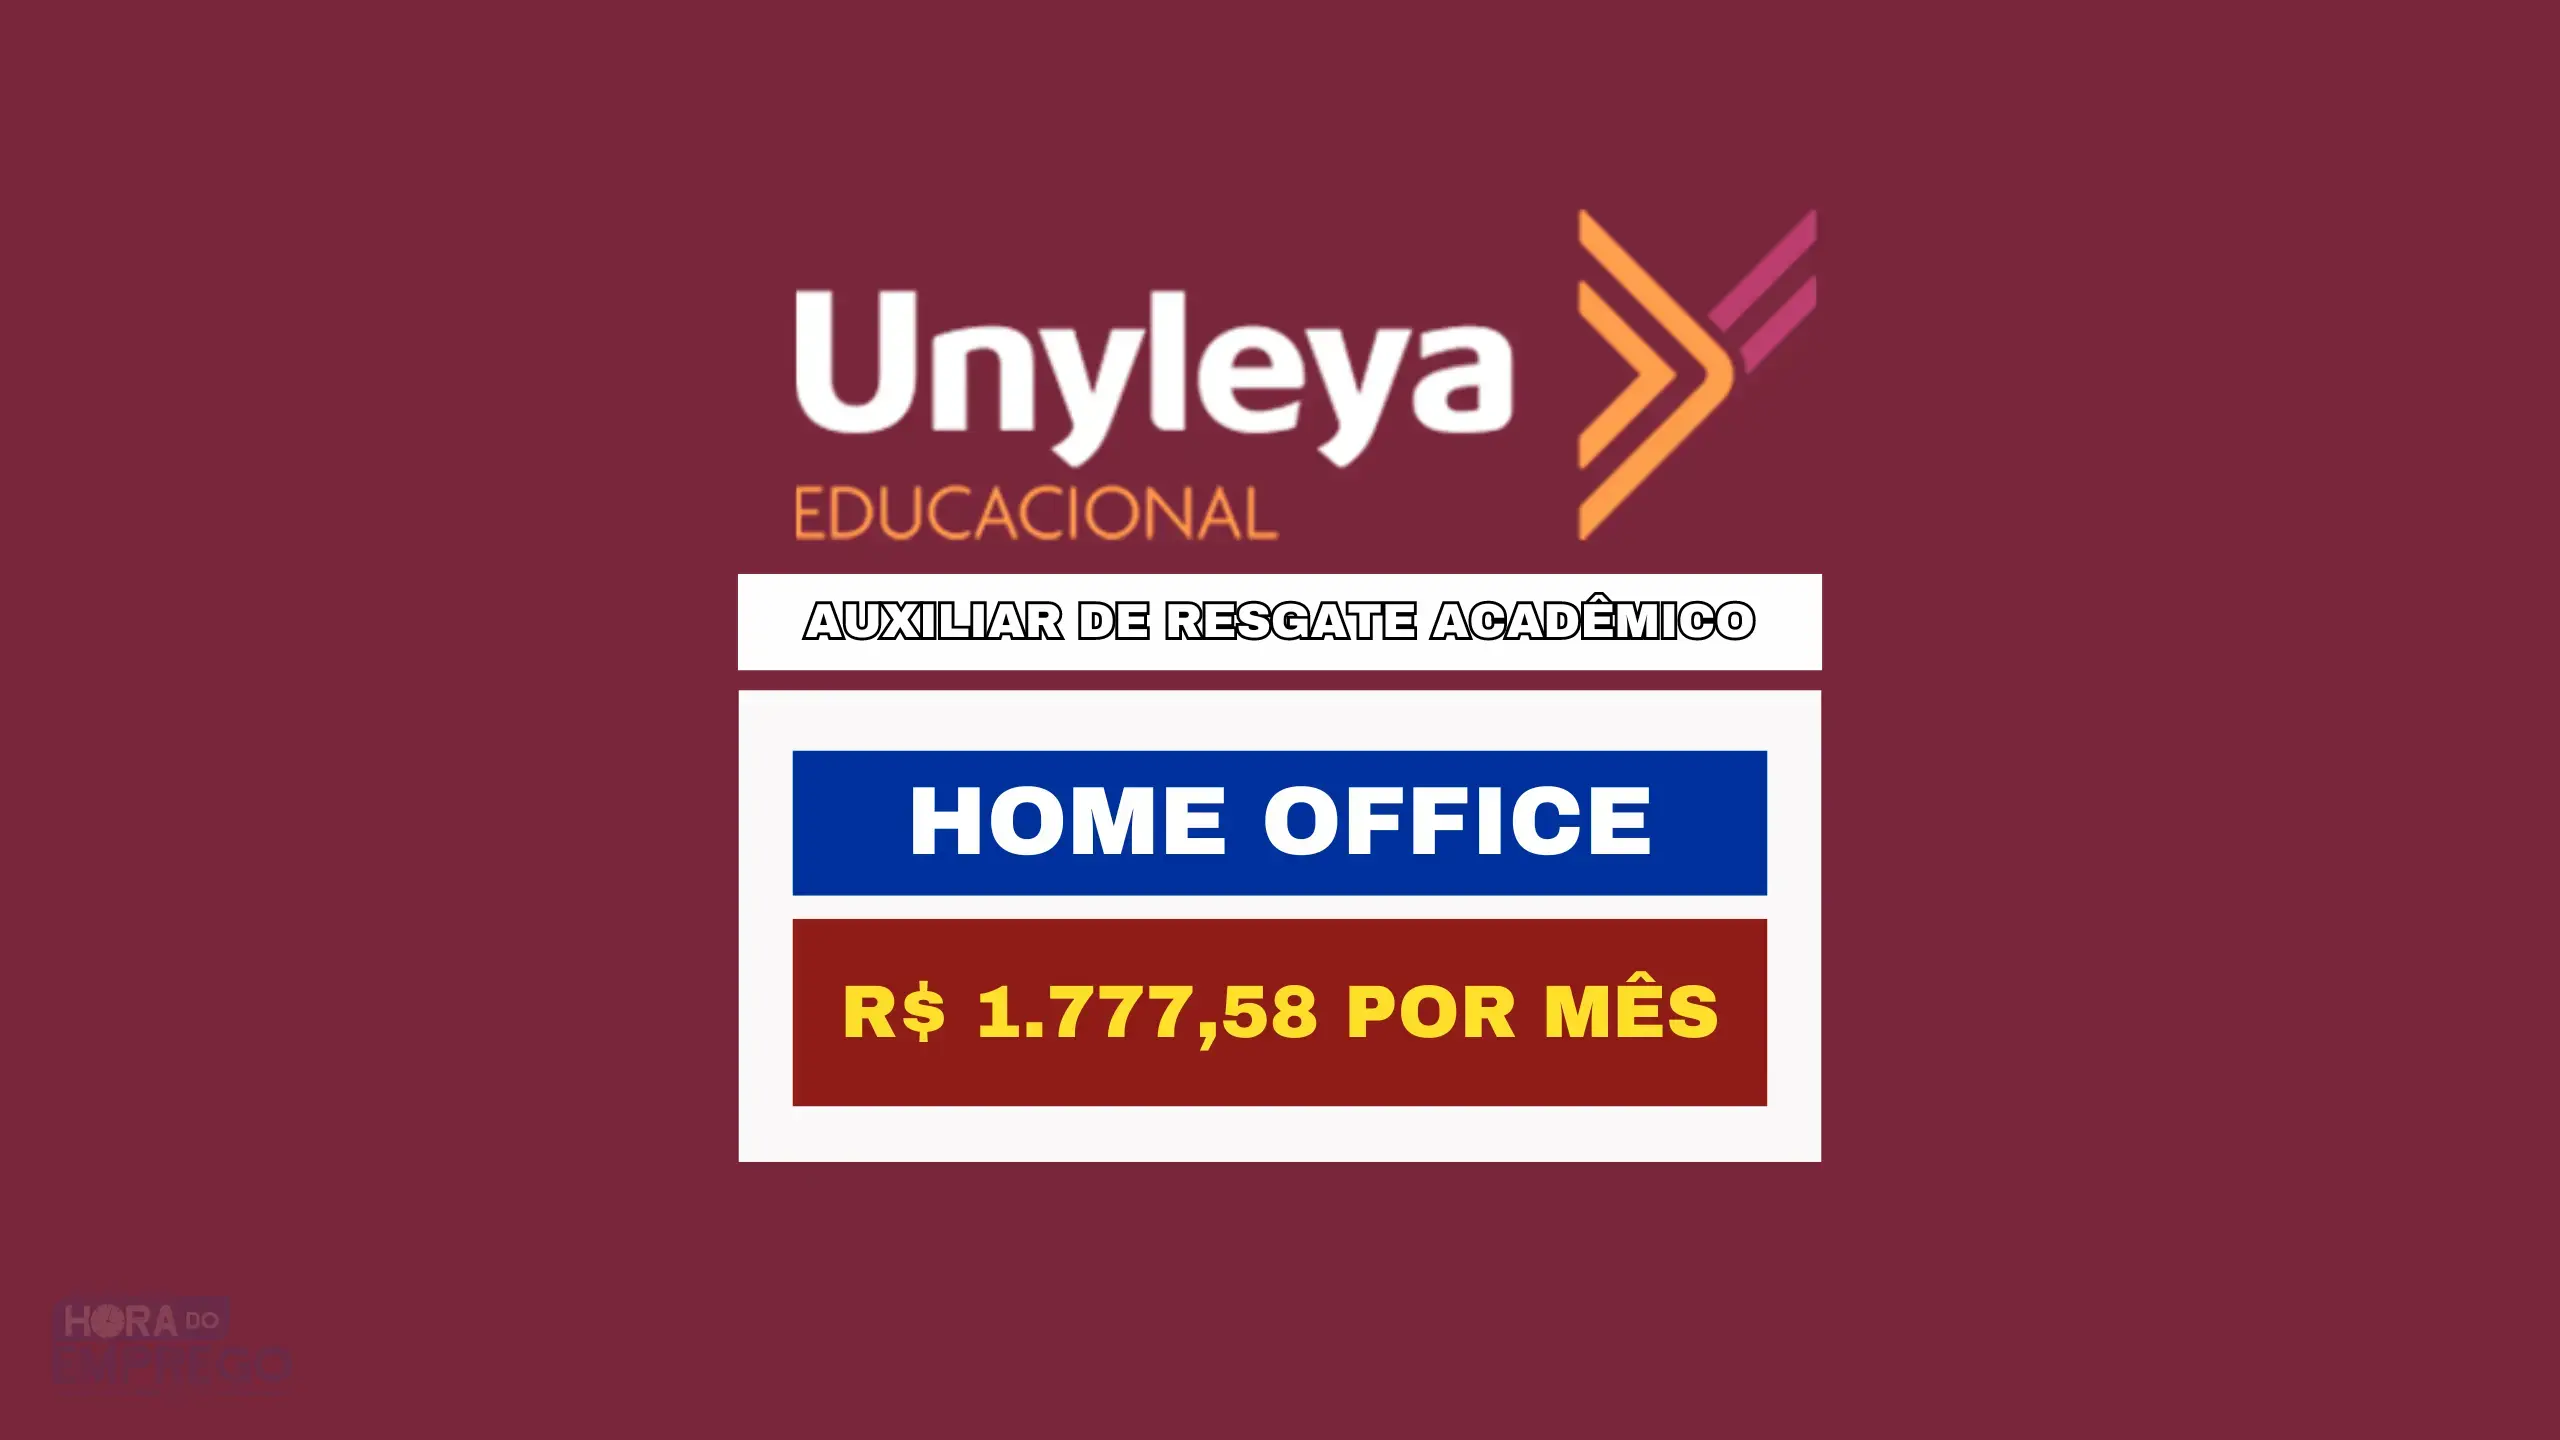 Unyleya Educacional abriu vaga HOME OFFICE com salário de R$ 1.777,58 para Auxiliar de Resgate Acadêmico de Segunda a Sexta